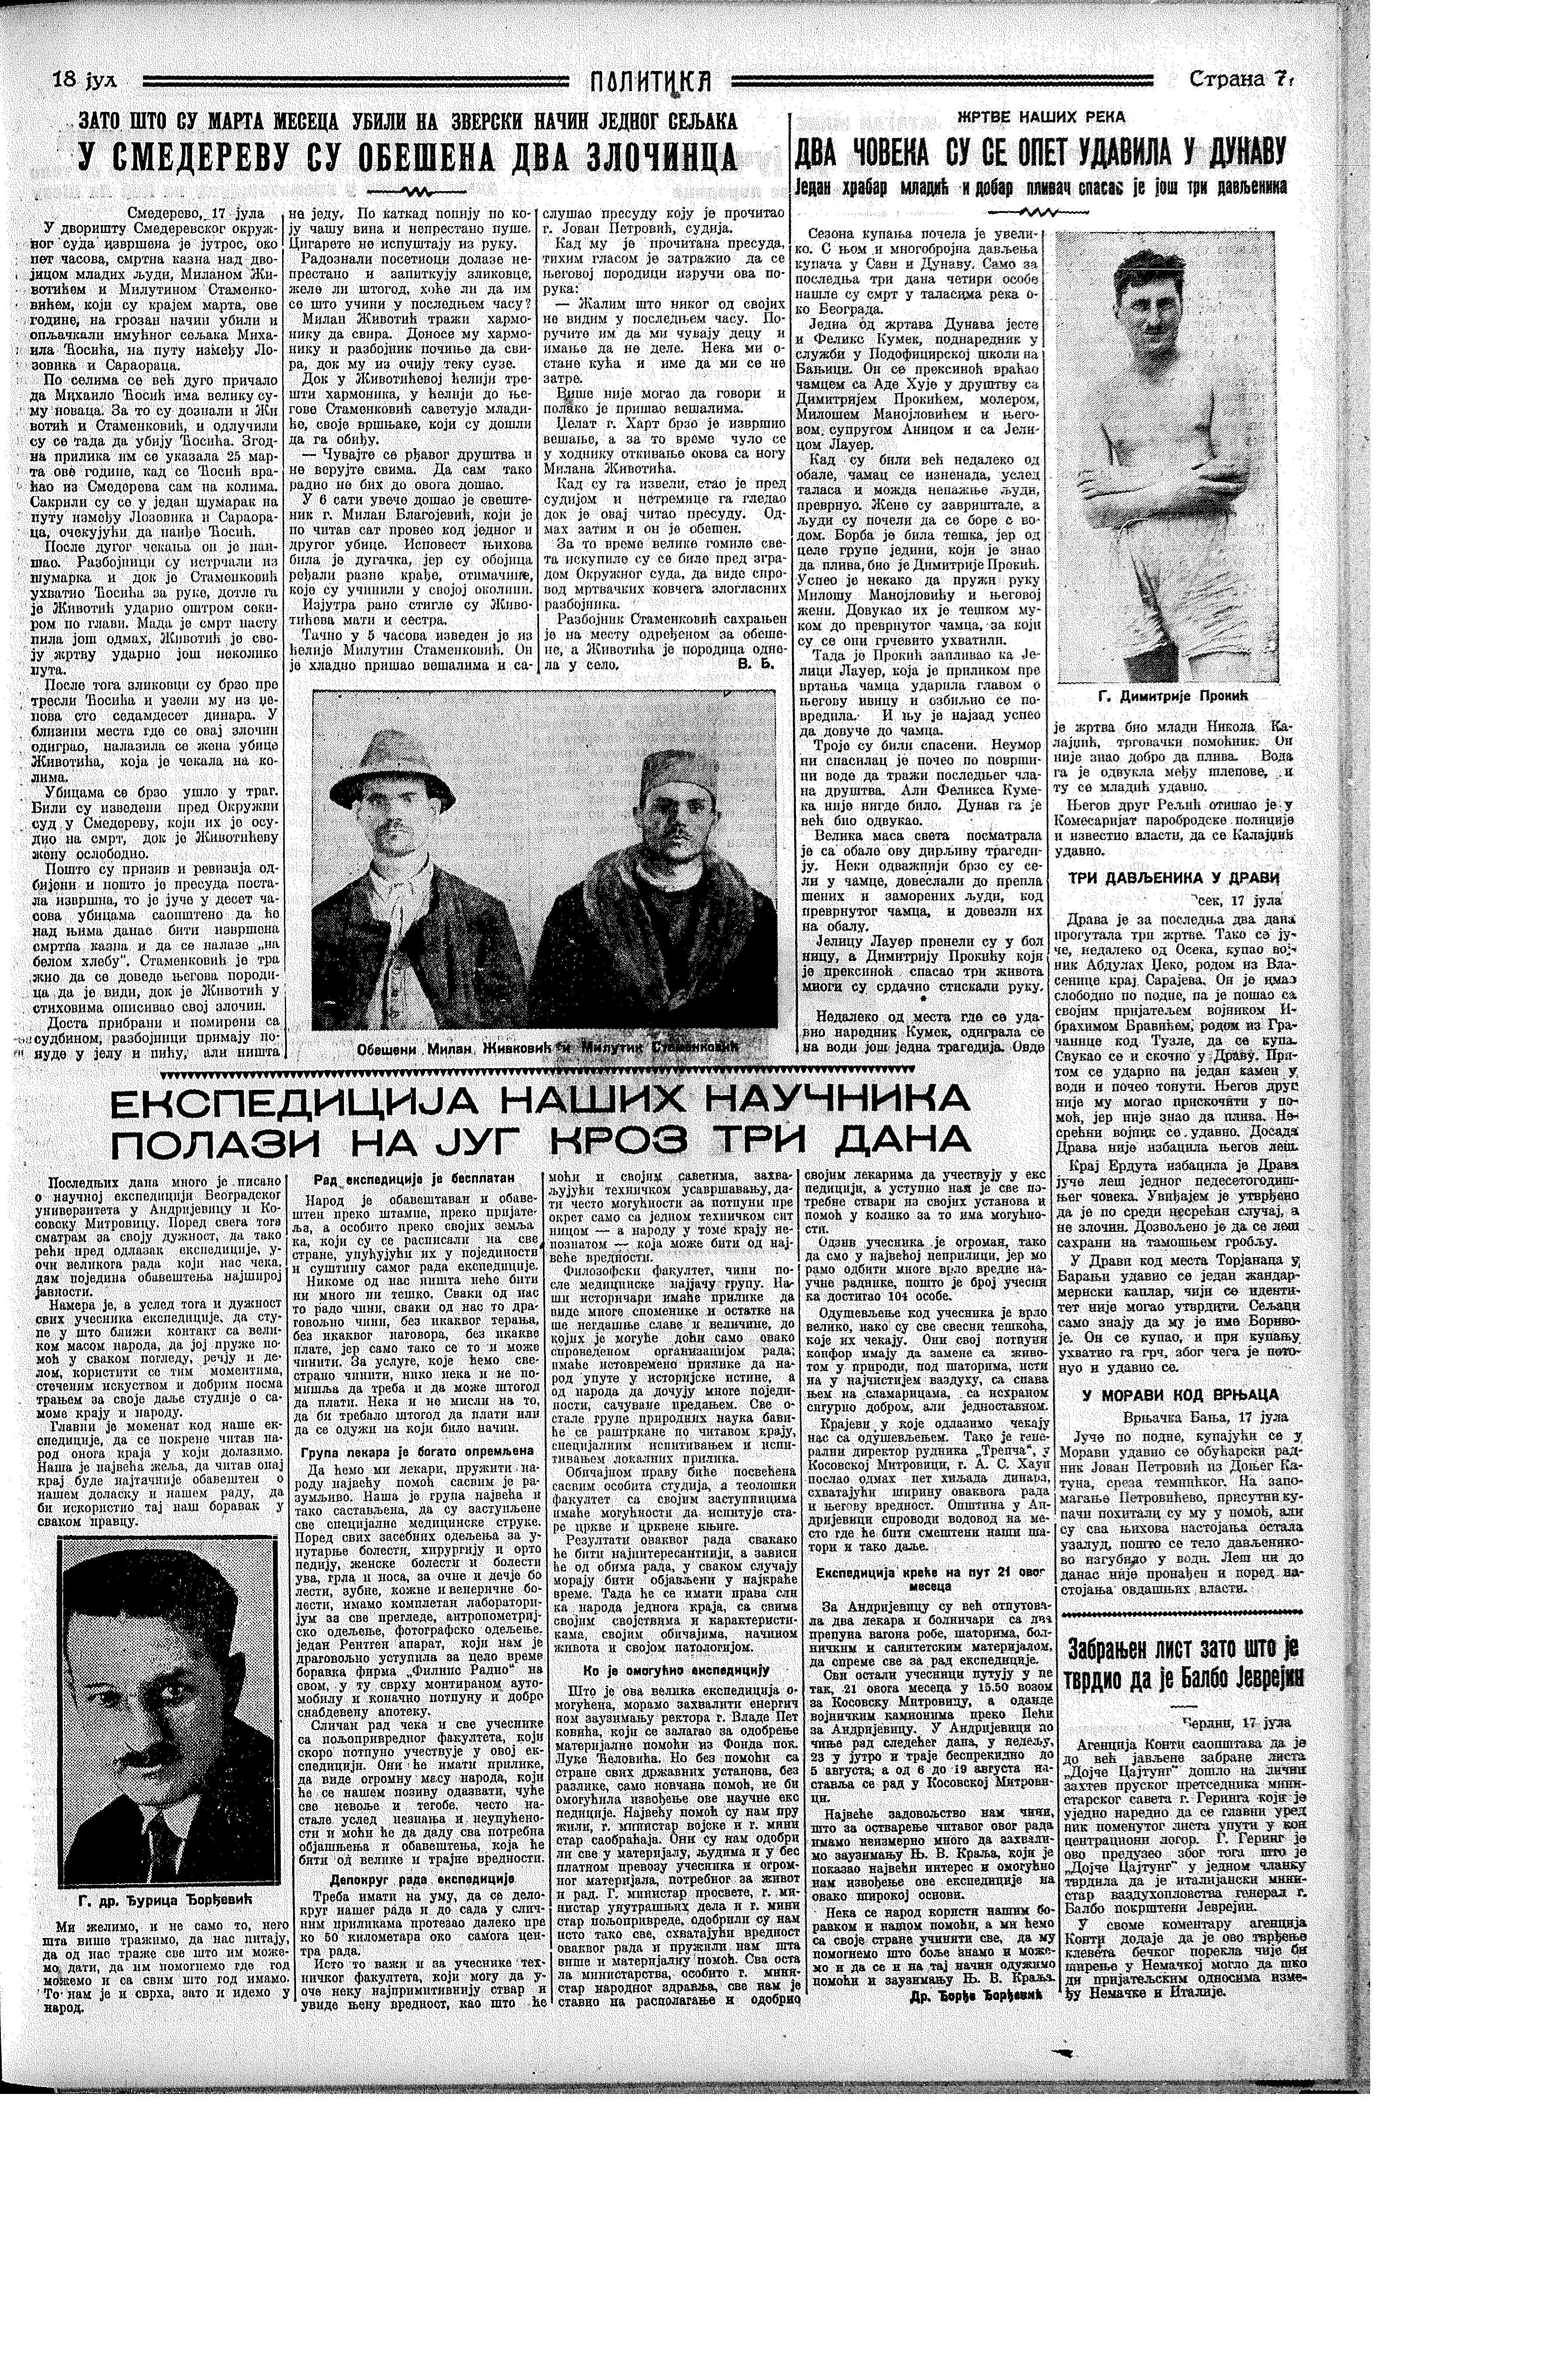 U Smederevu obešena dva zločinca, Politika, 18.07.1933.